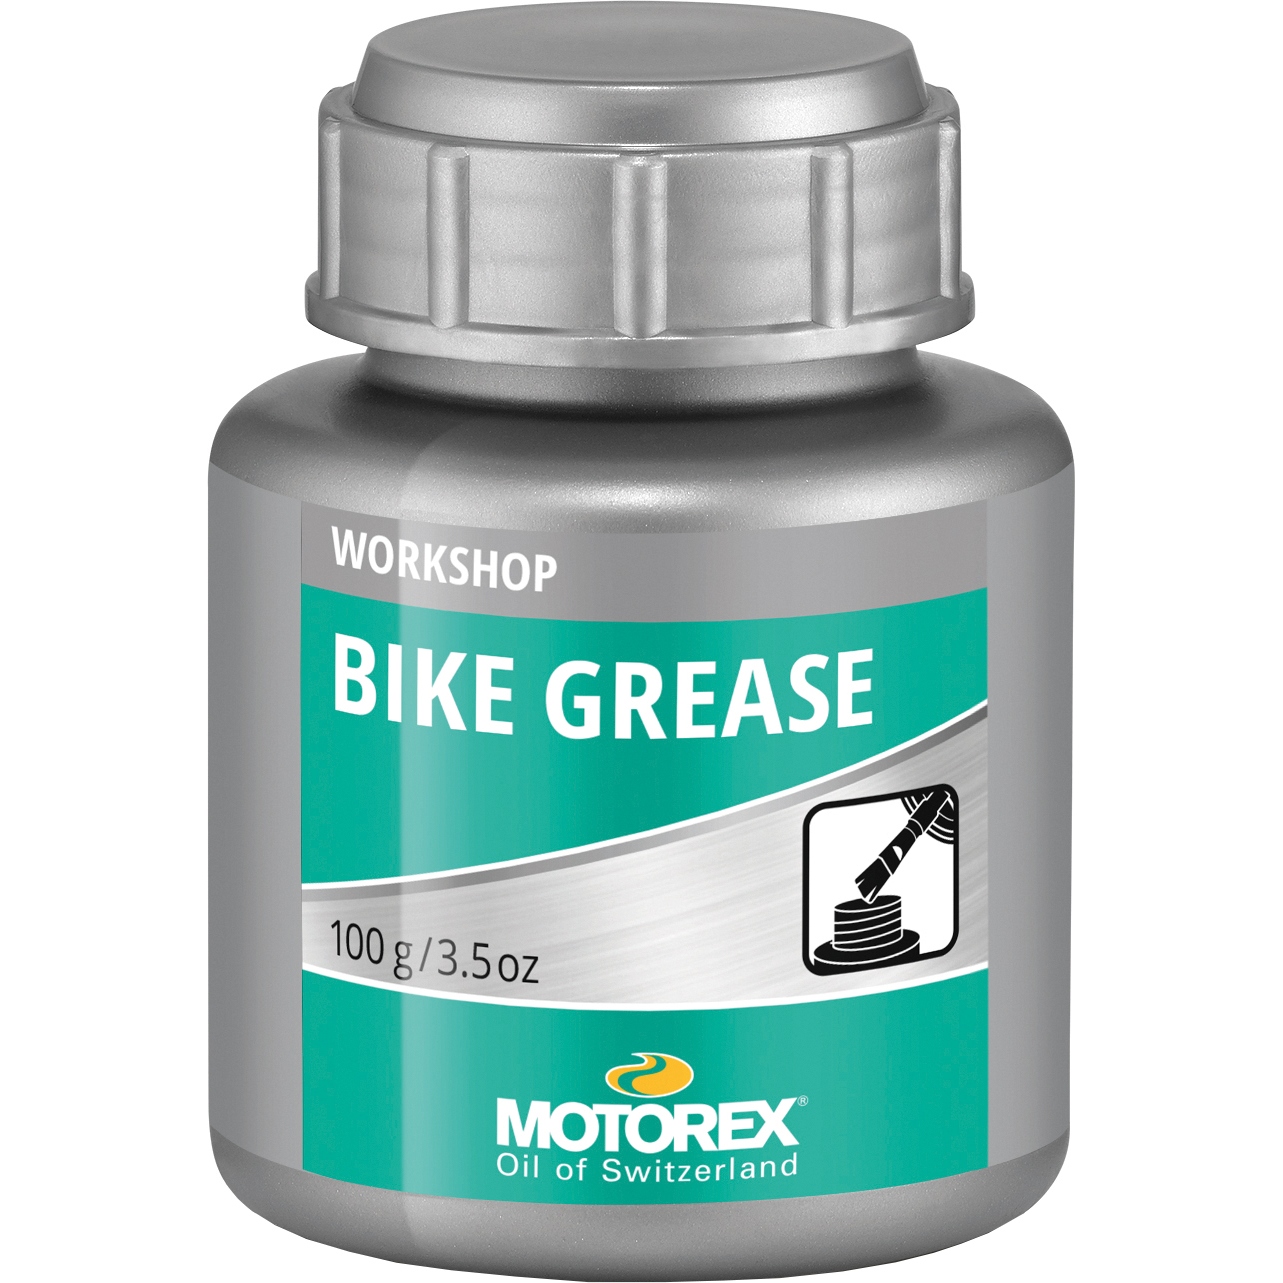 Immagine prodotto da Motorex Bike Grease - Grasso per Biciclette - 100g